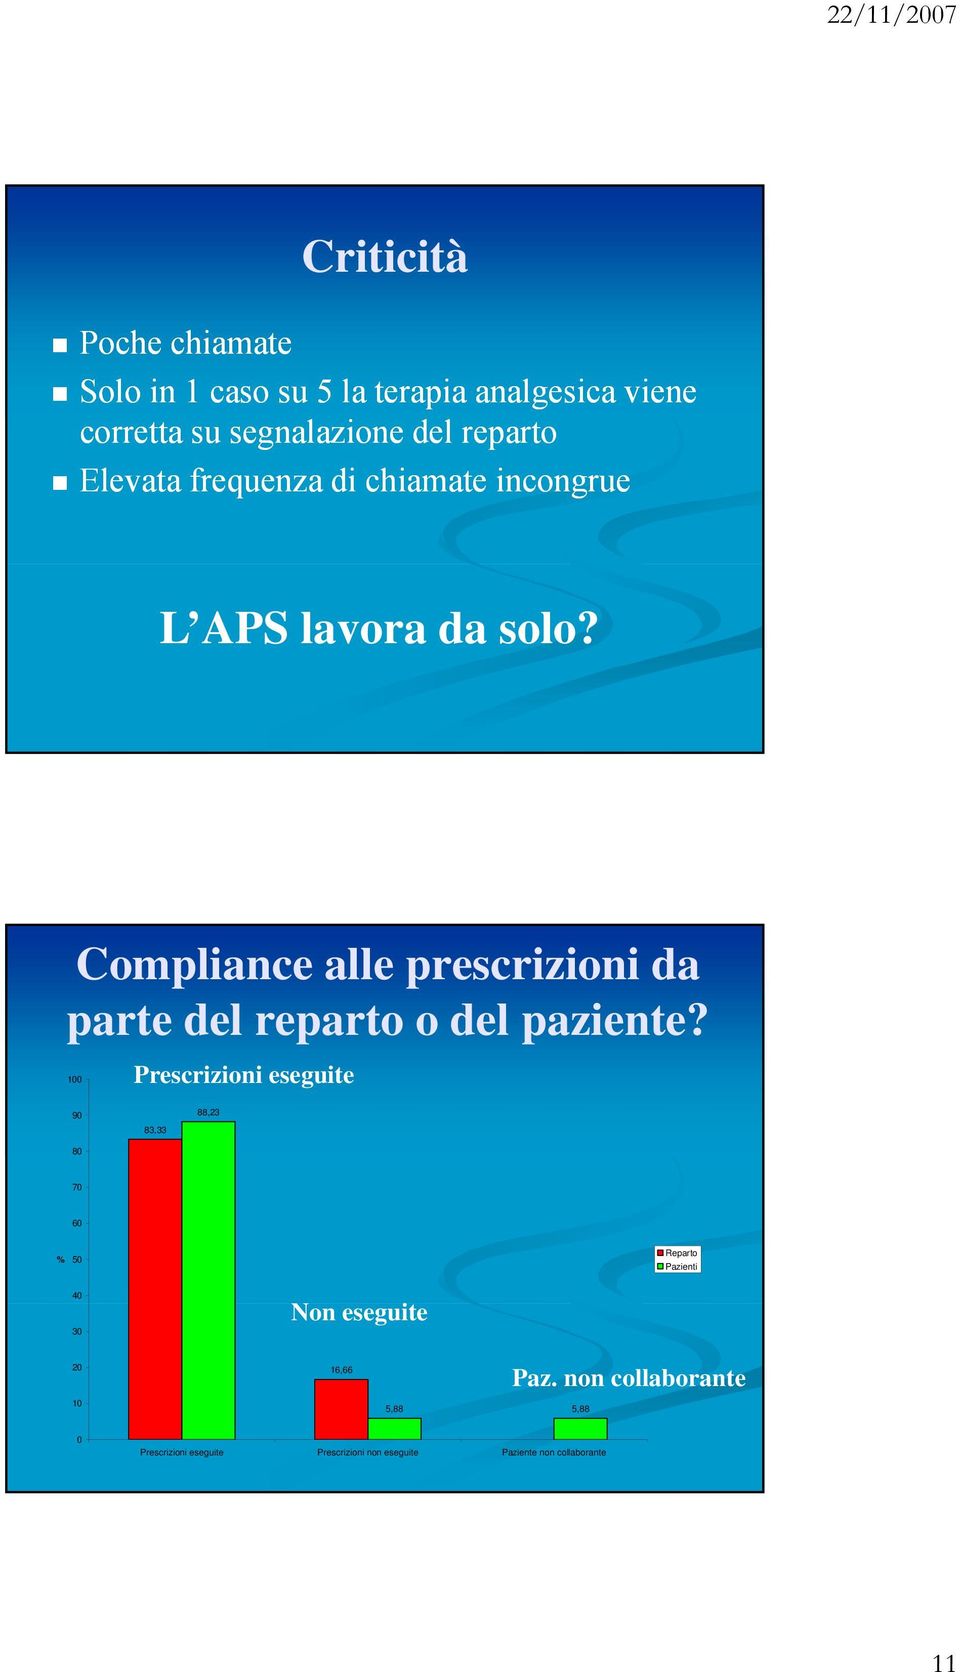 Compliance alle prescrizioni da parte del reparto o del paziente?